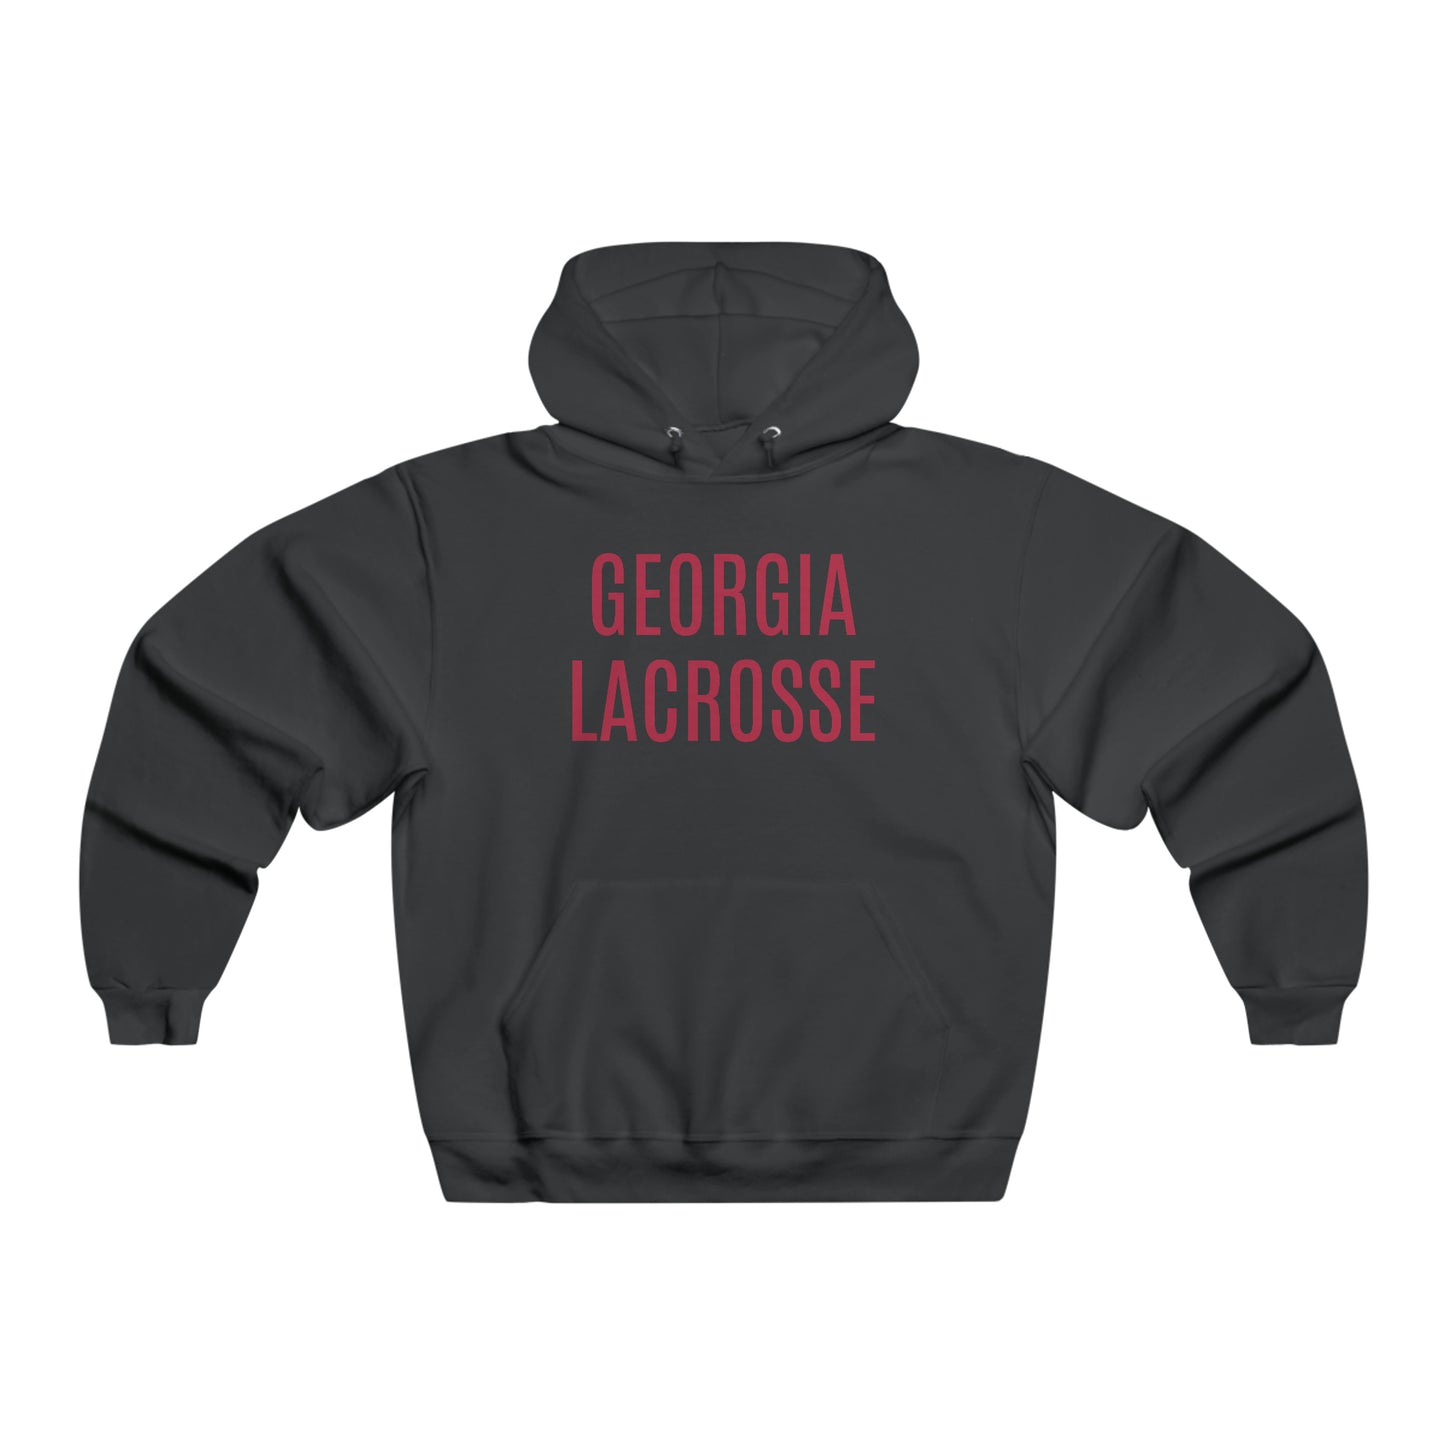 Georgia Lacrosse Hooded Sweatshirt